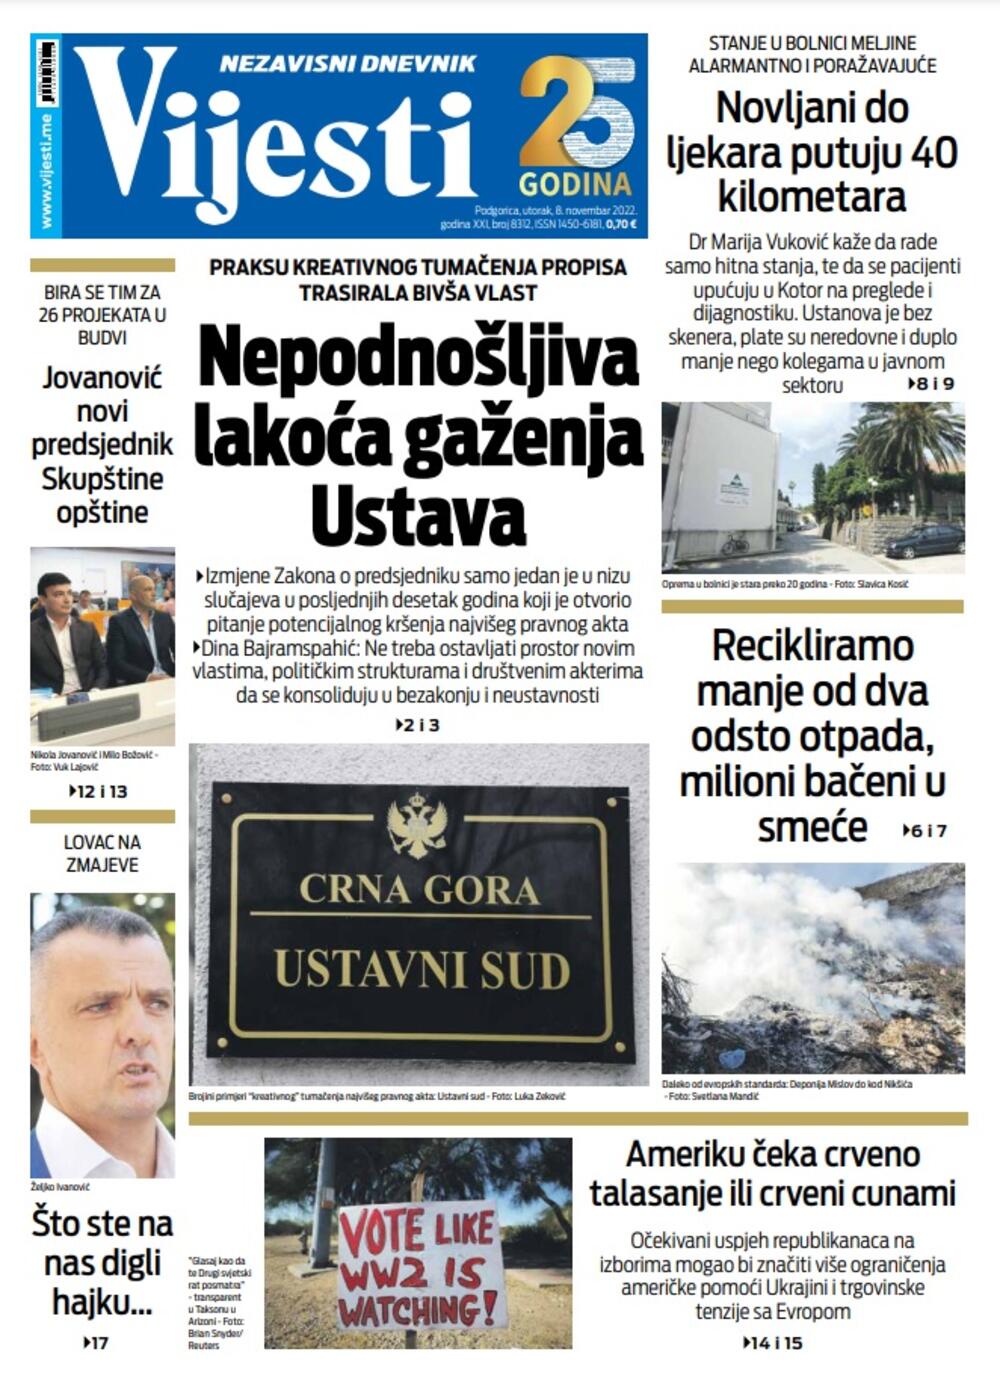 Naslovna strana "Vijesti" za 8. novembar 2022., Foto: Vijesti